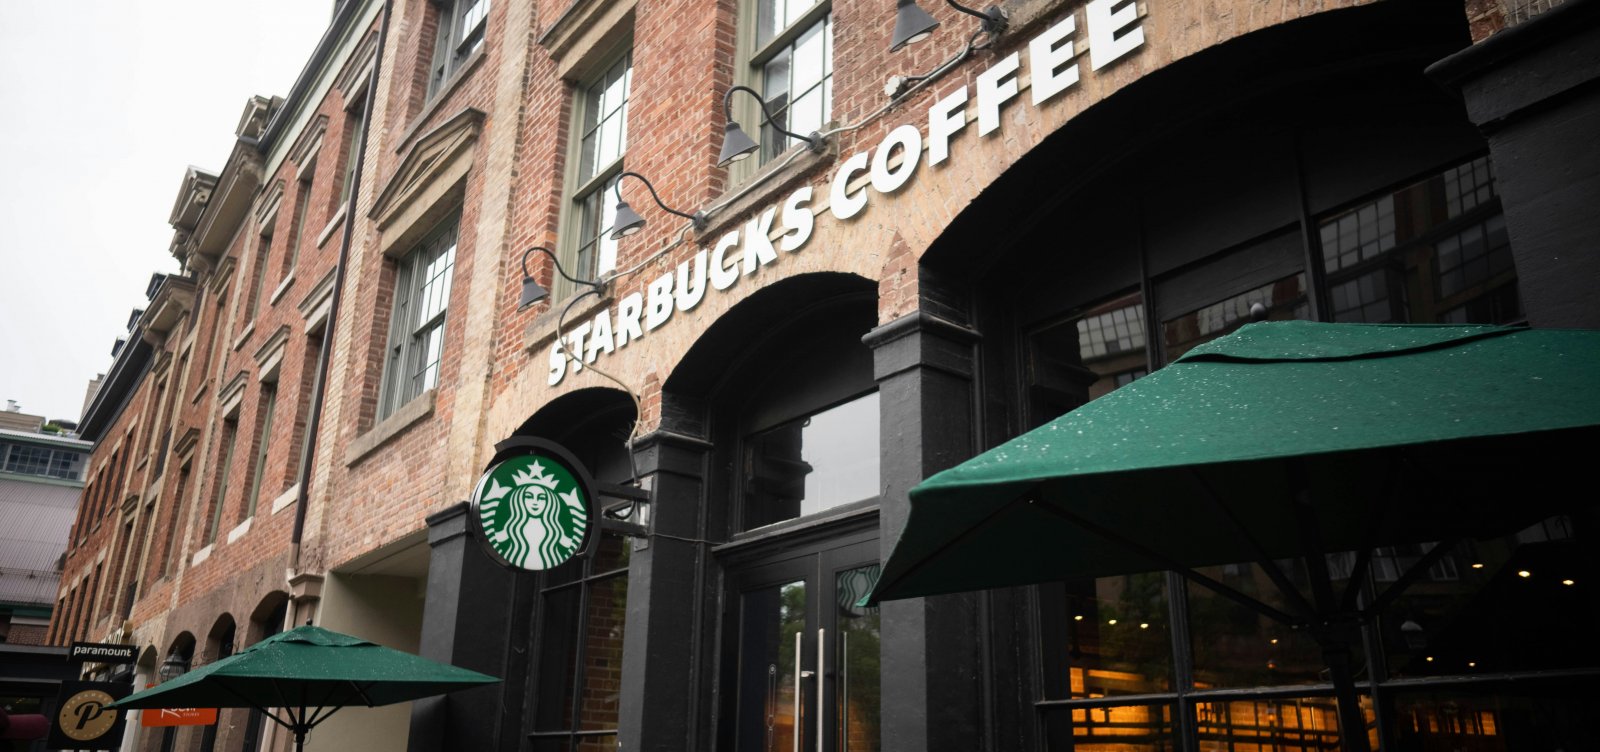 Justiça autoriza penhora de bens de dono da SouthRock, operadora da Starbucks